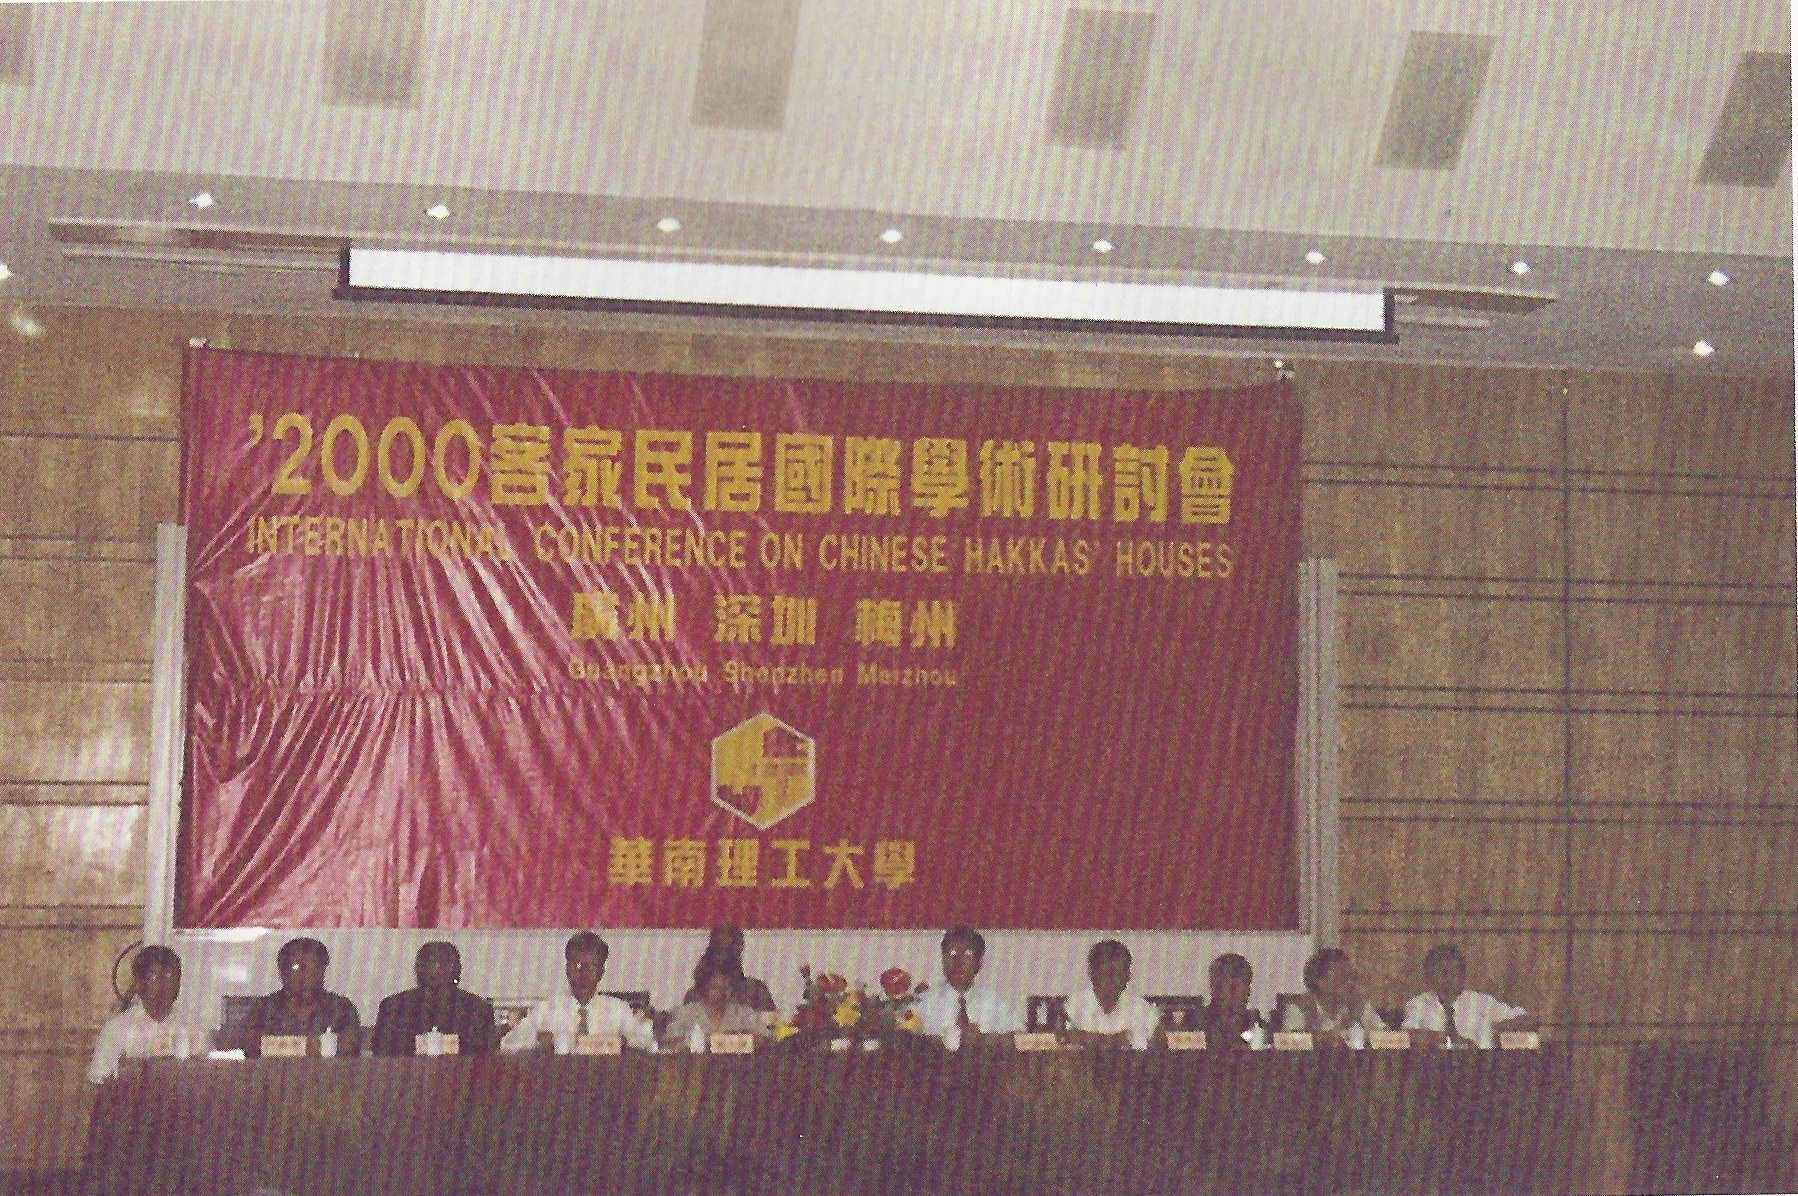 中国客家民居国际学术研讨会开幕式